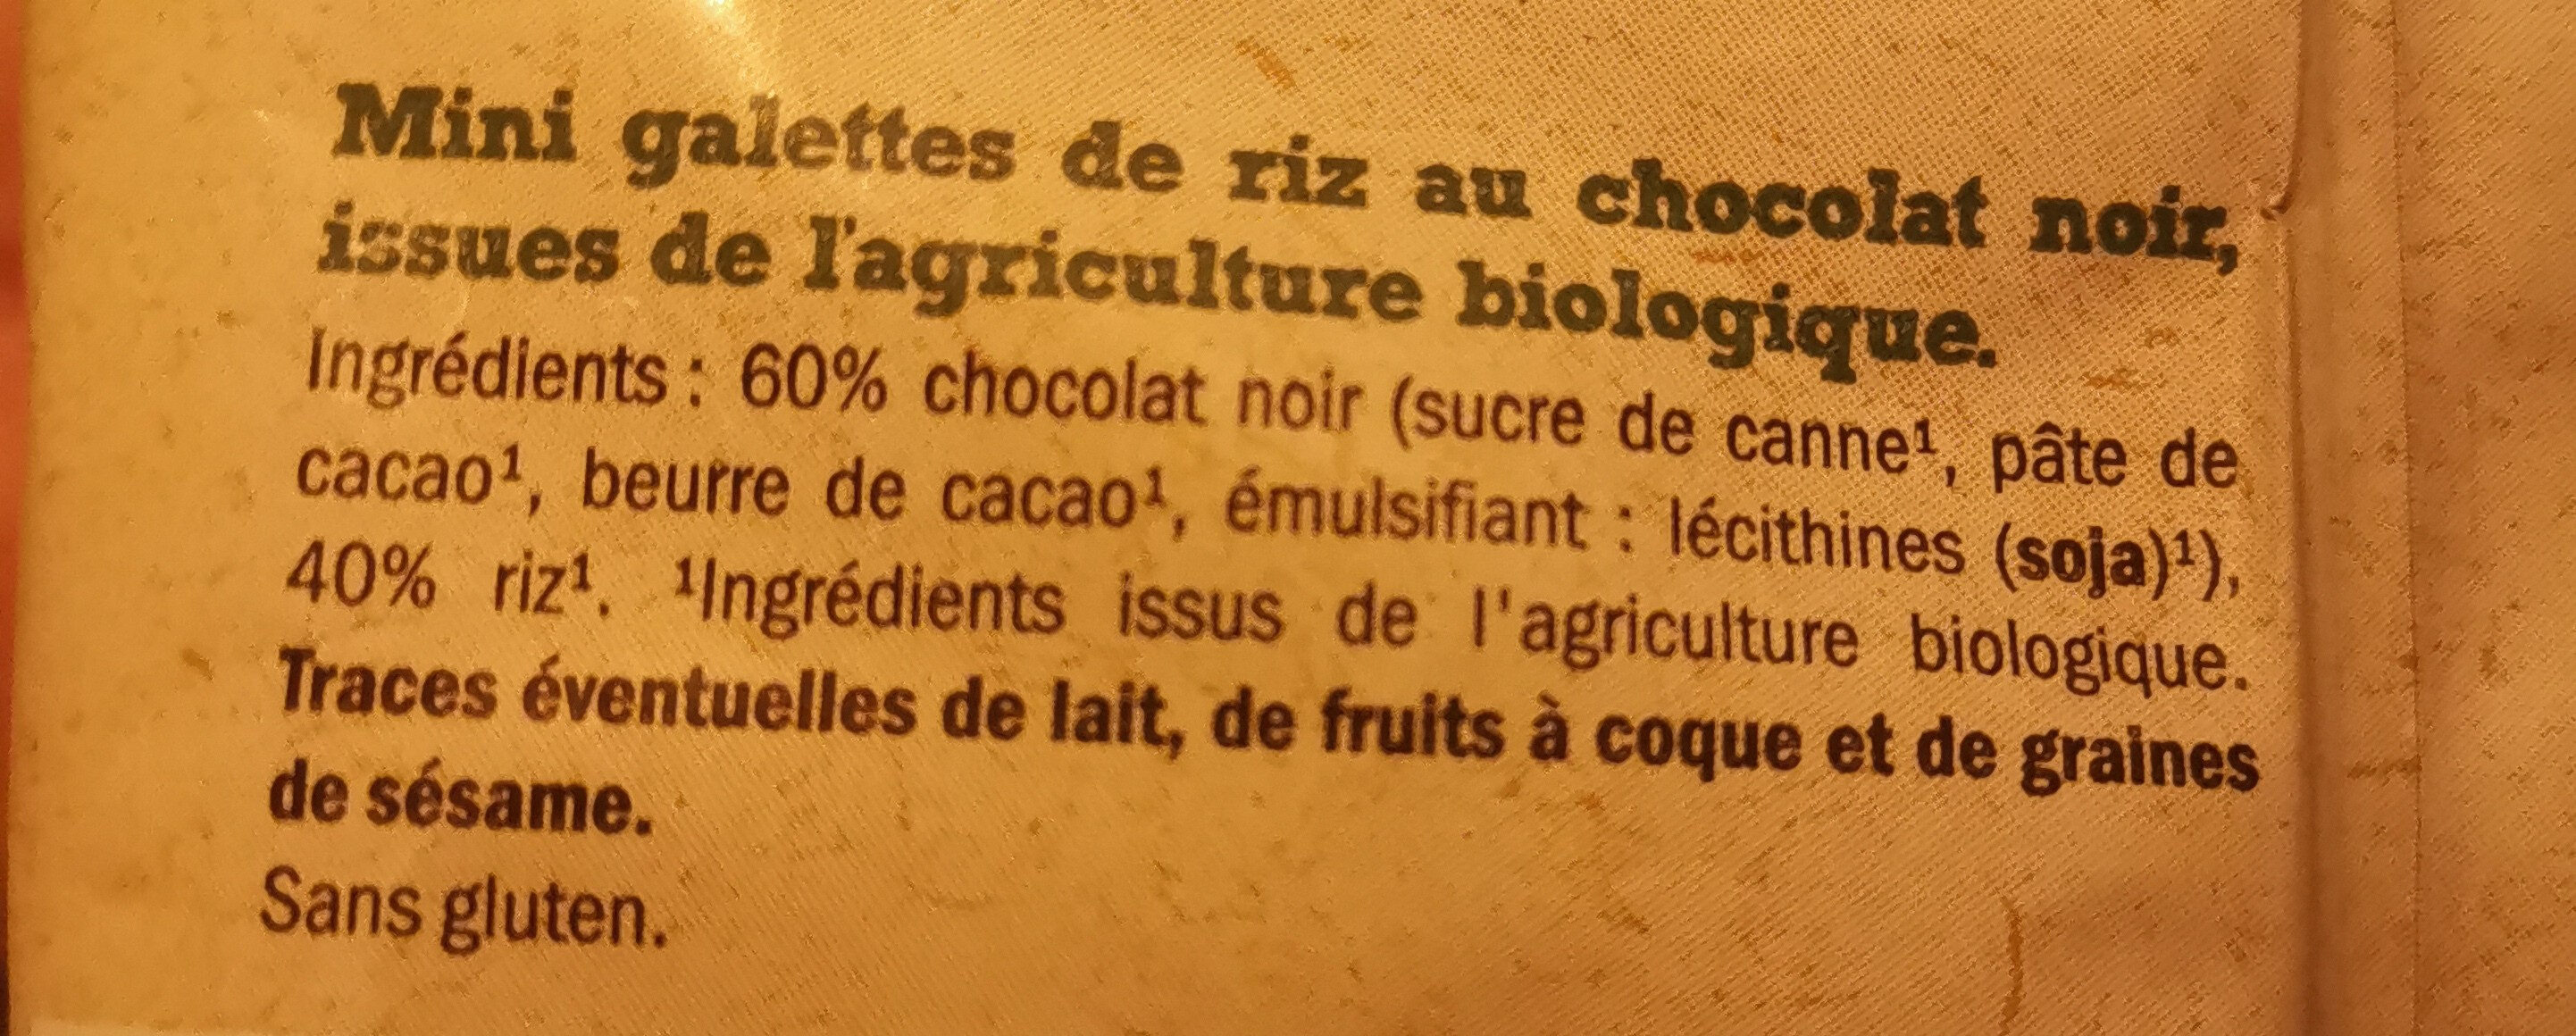 MINI GALETTES DE RIZ CHOCOLAT NOIR - Ingredients - fr